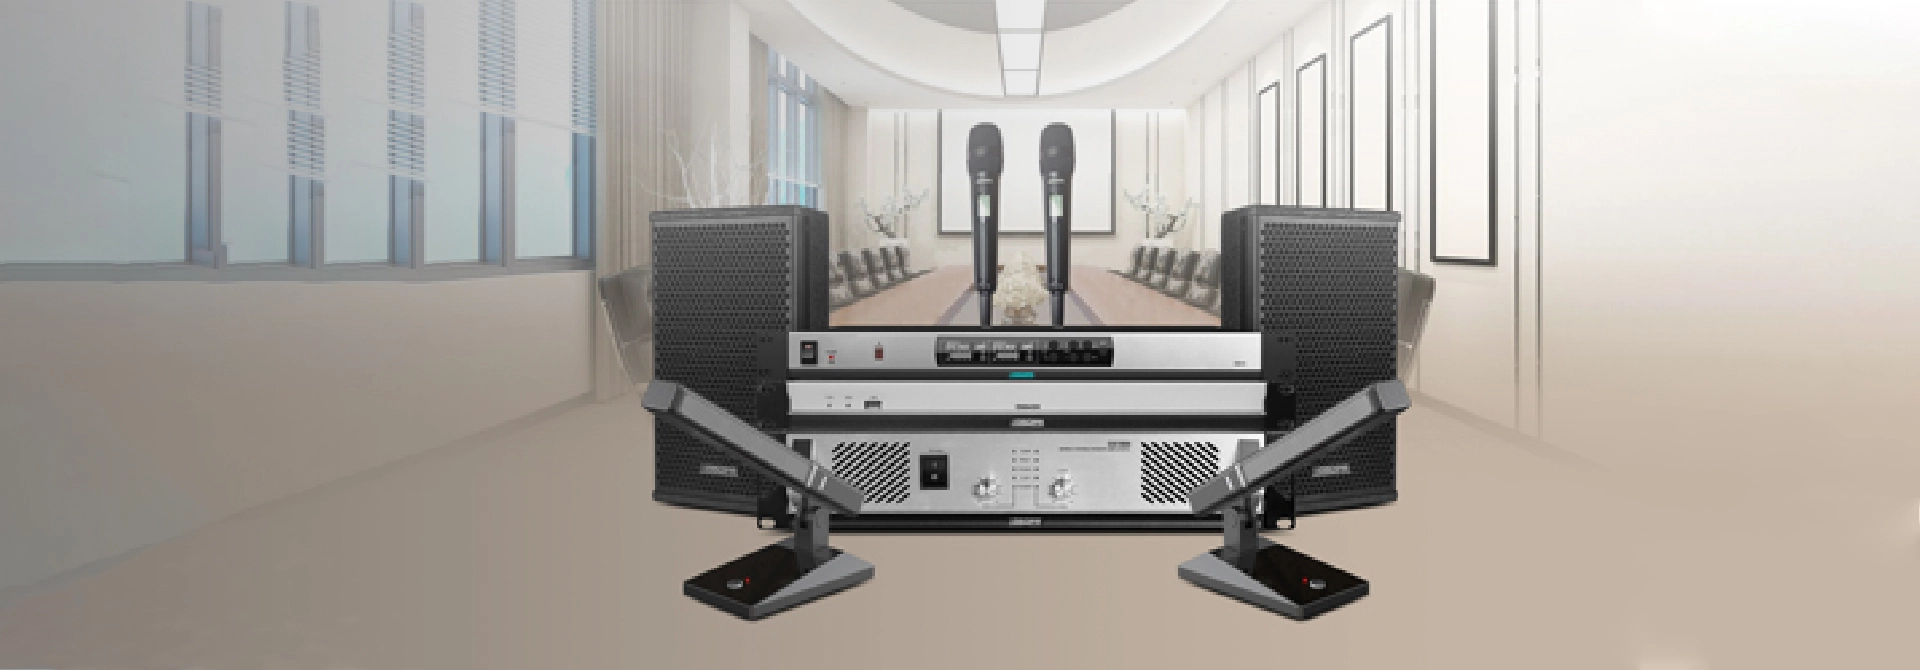 โซลูชันระบบเสียงระดับมืออาชีพสำหรับห้องประชุม D5830